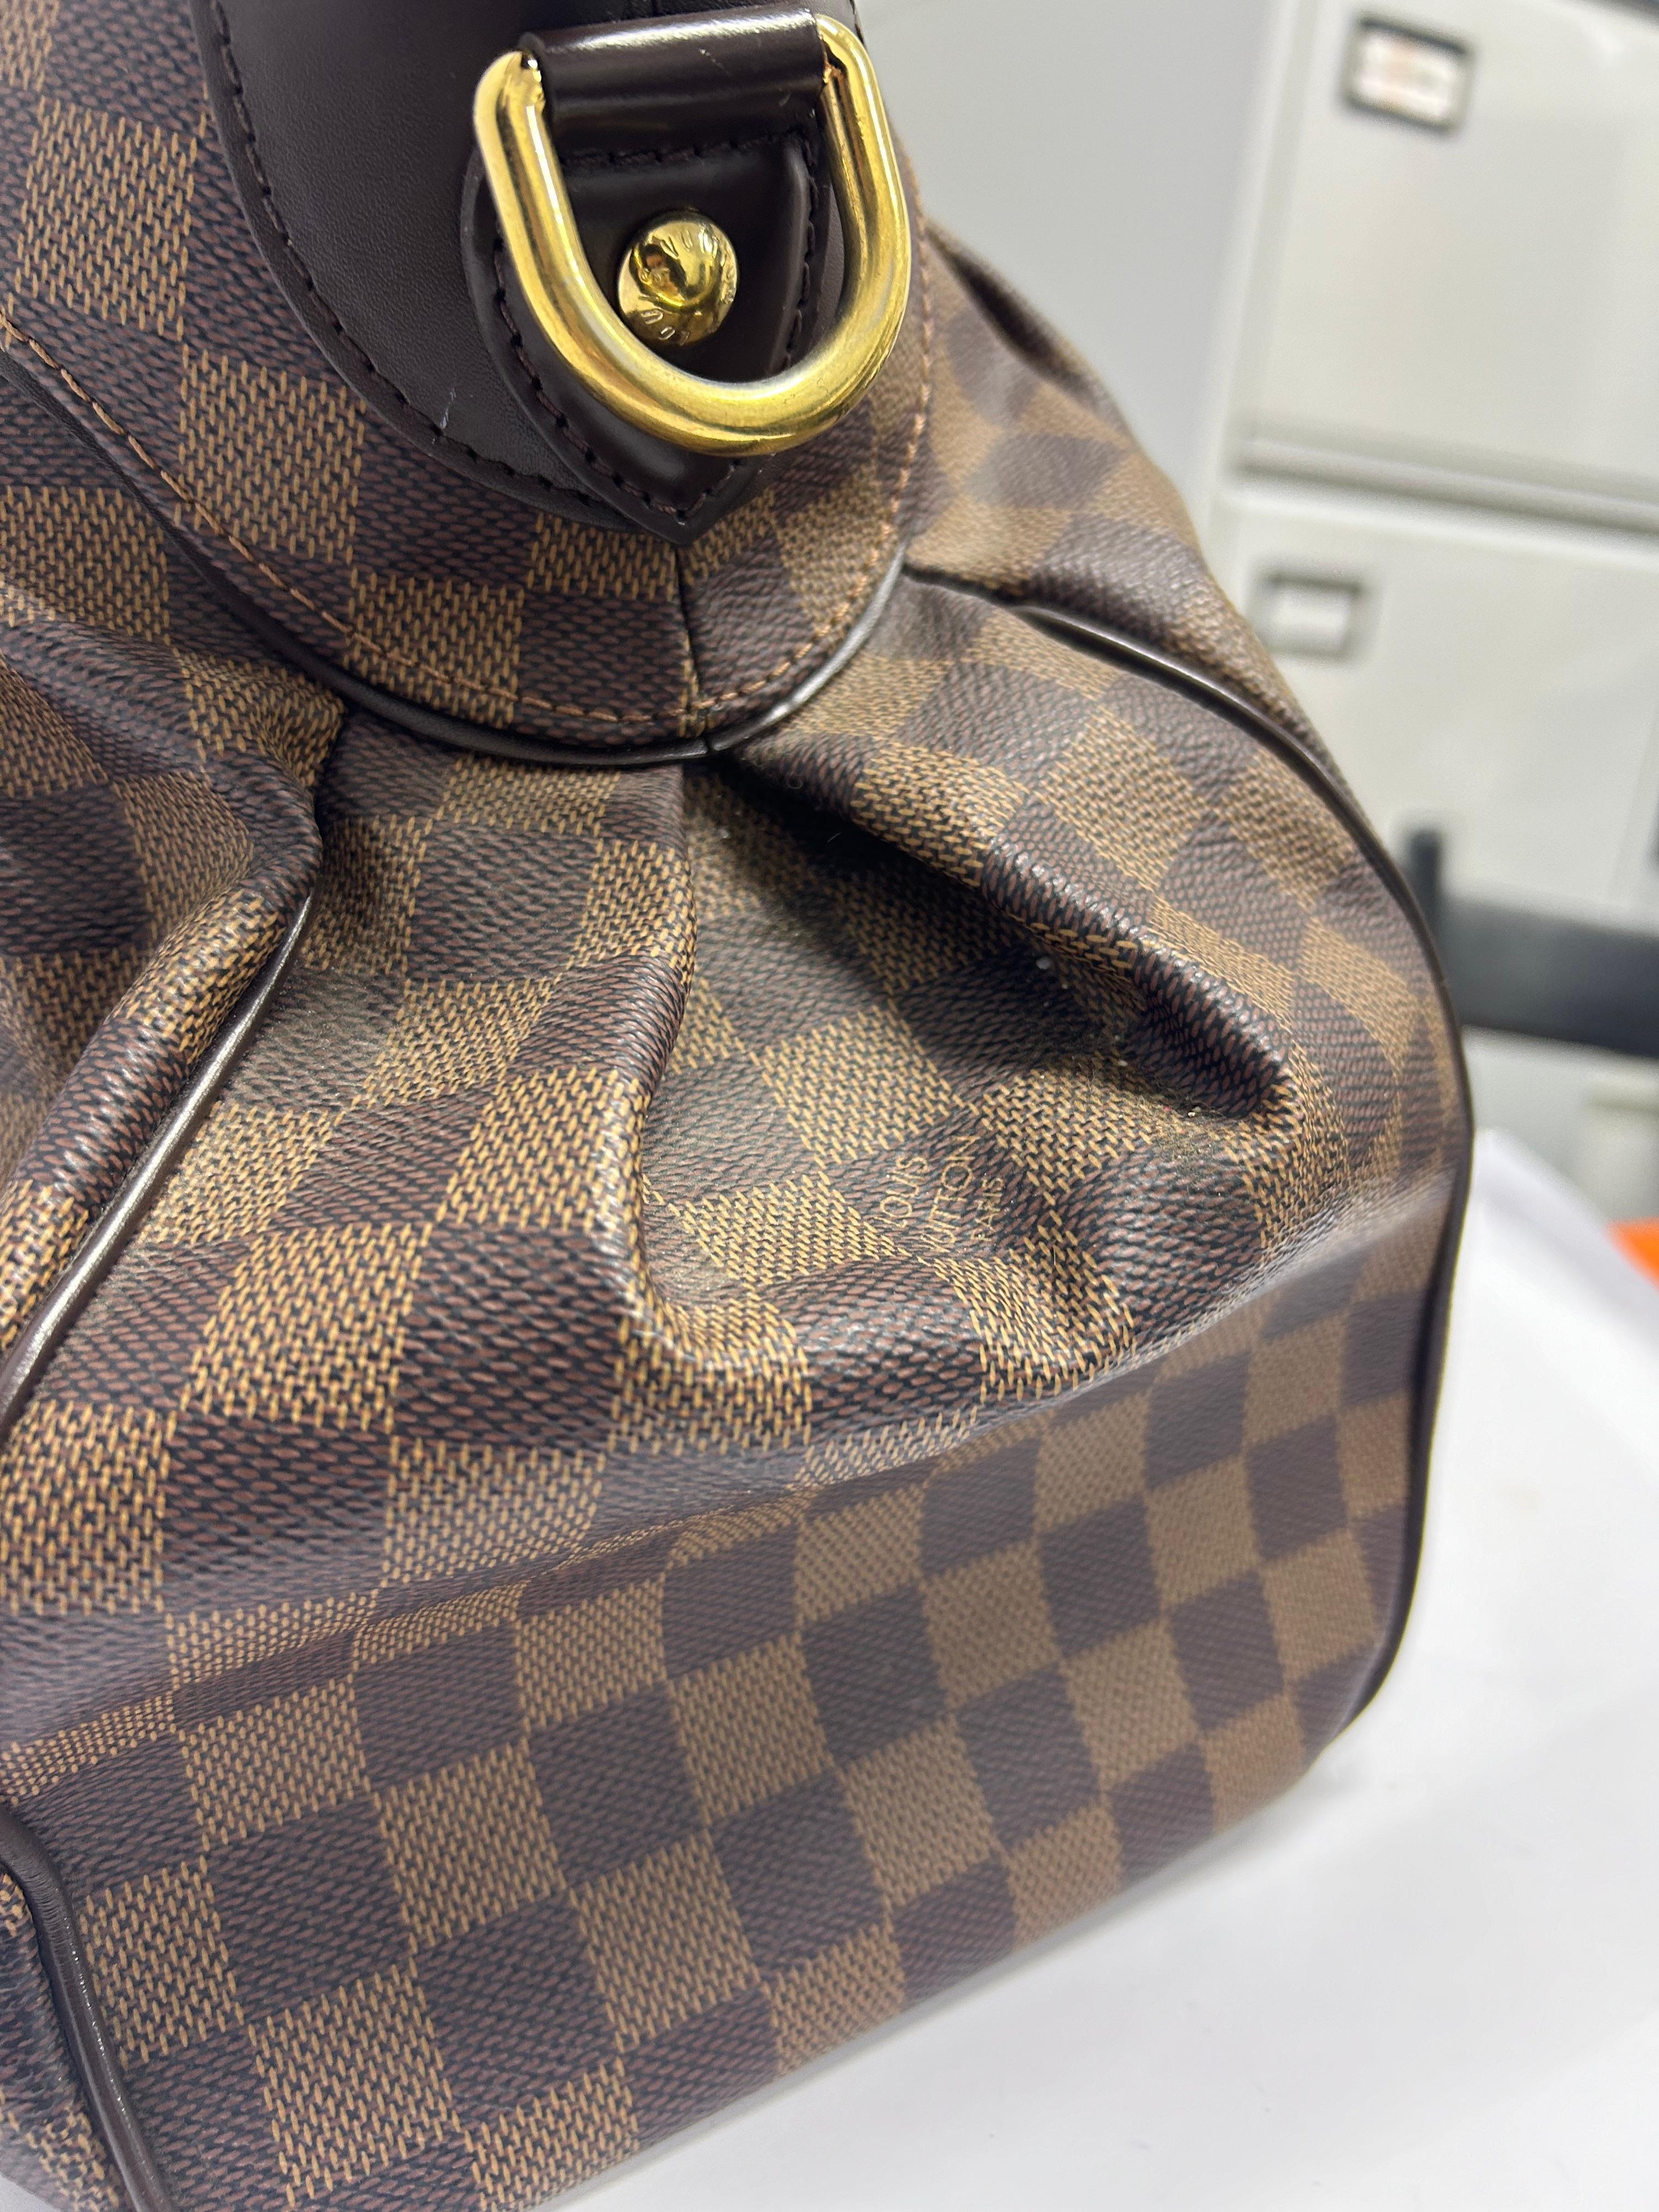 Louis Vuitton Trevi Damier Ebene GM Bag For Sale 9